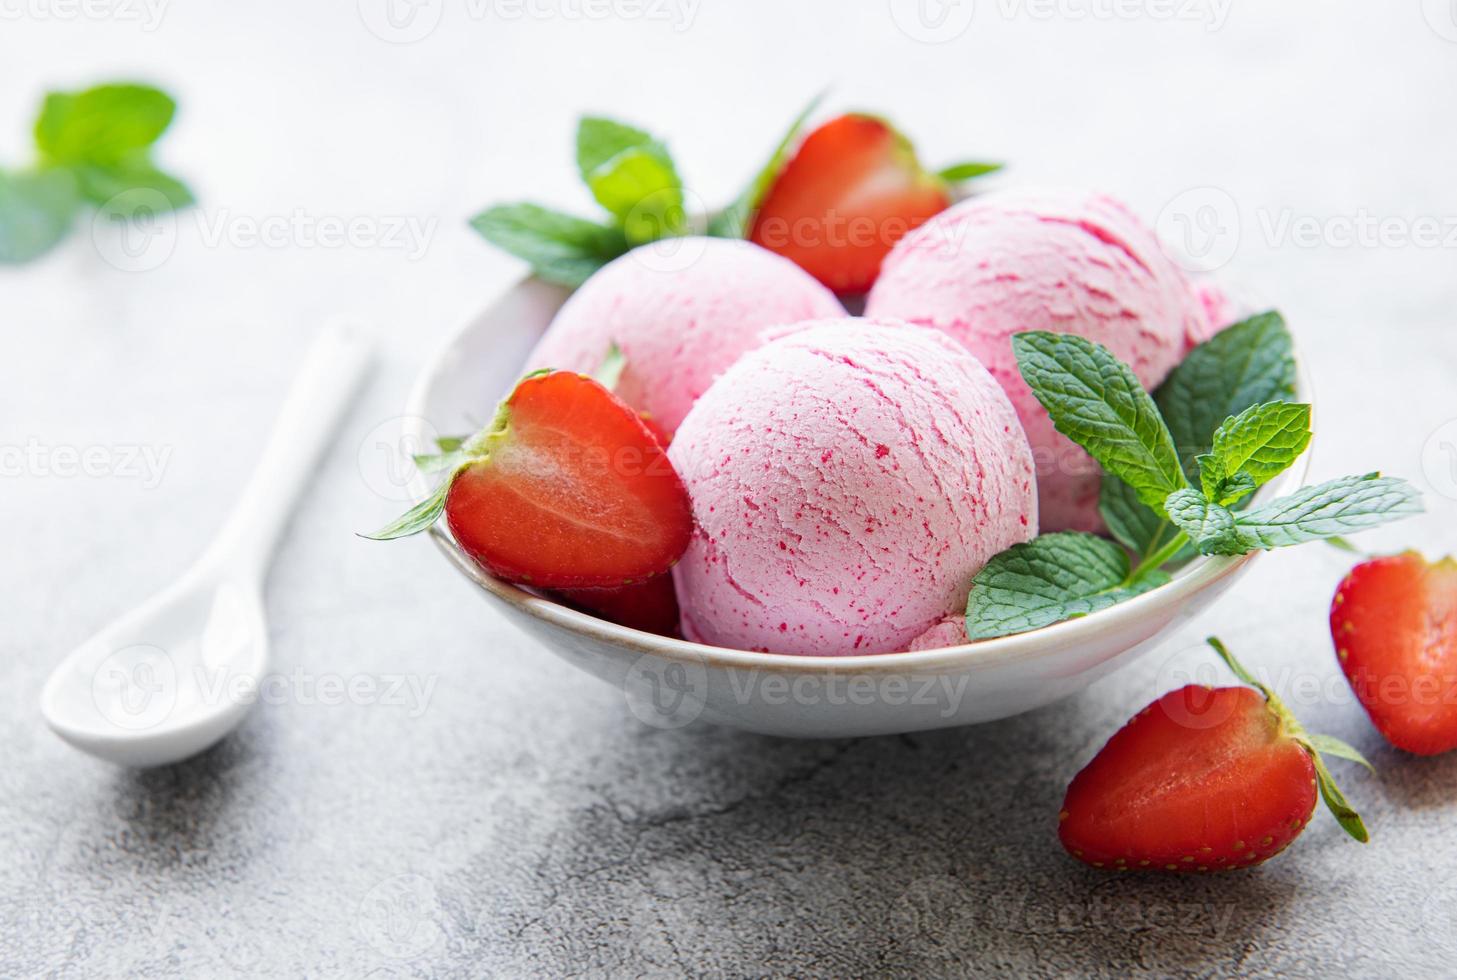 sorvete de morango caseiro com morangos frescos foto